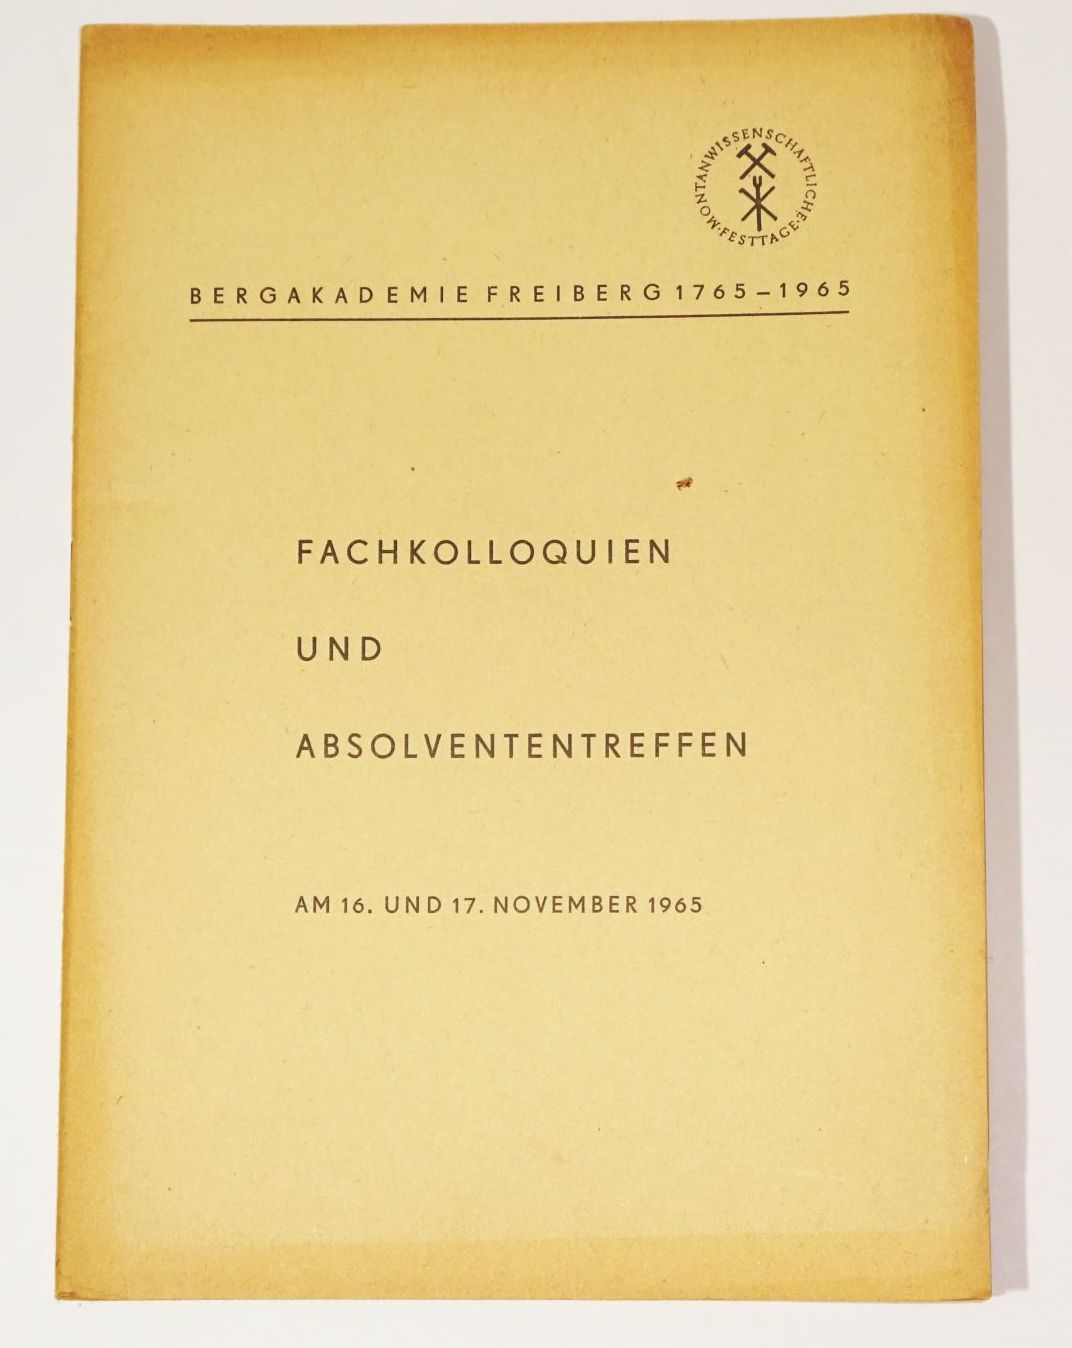 Aus der Geschichte der Bergakademie Freiberg 1965 